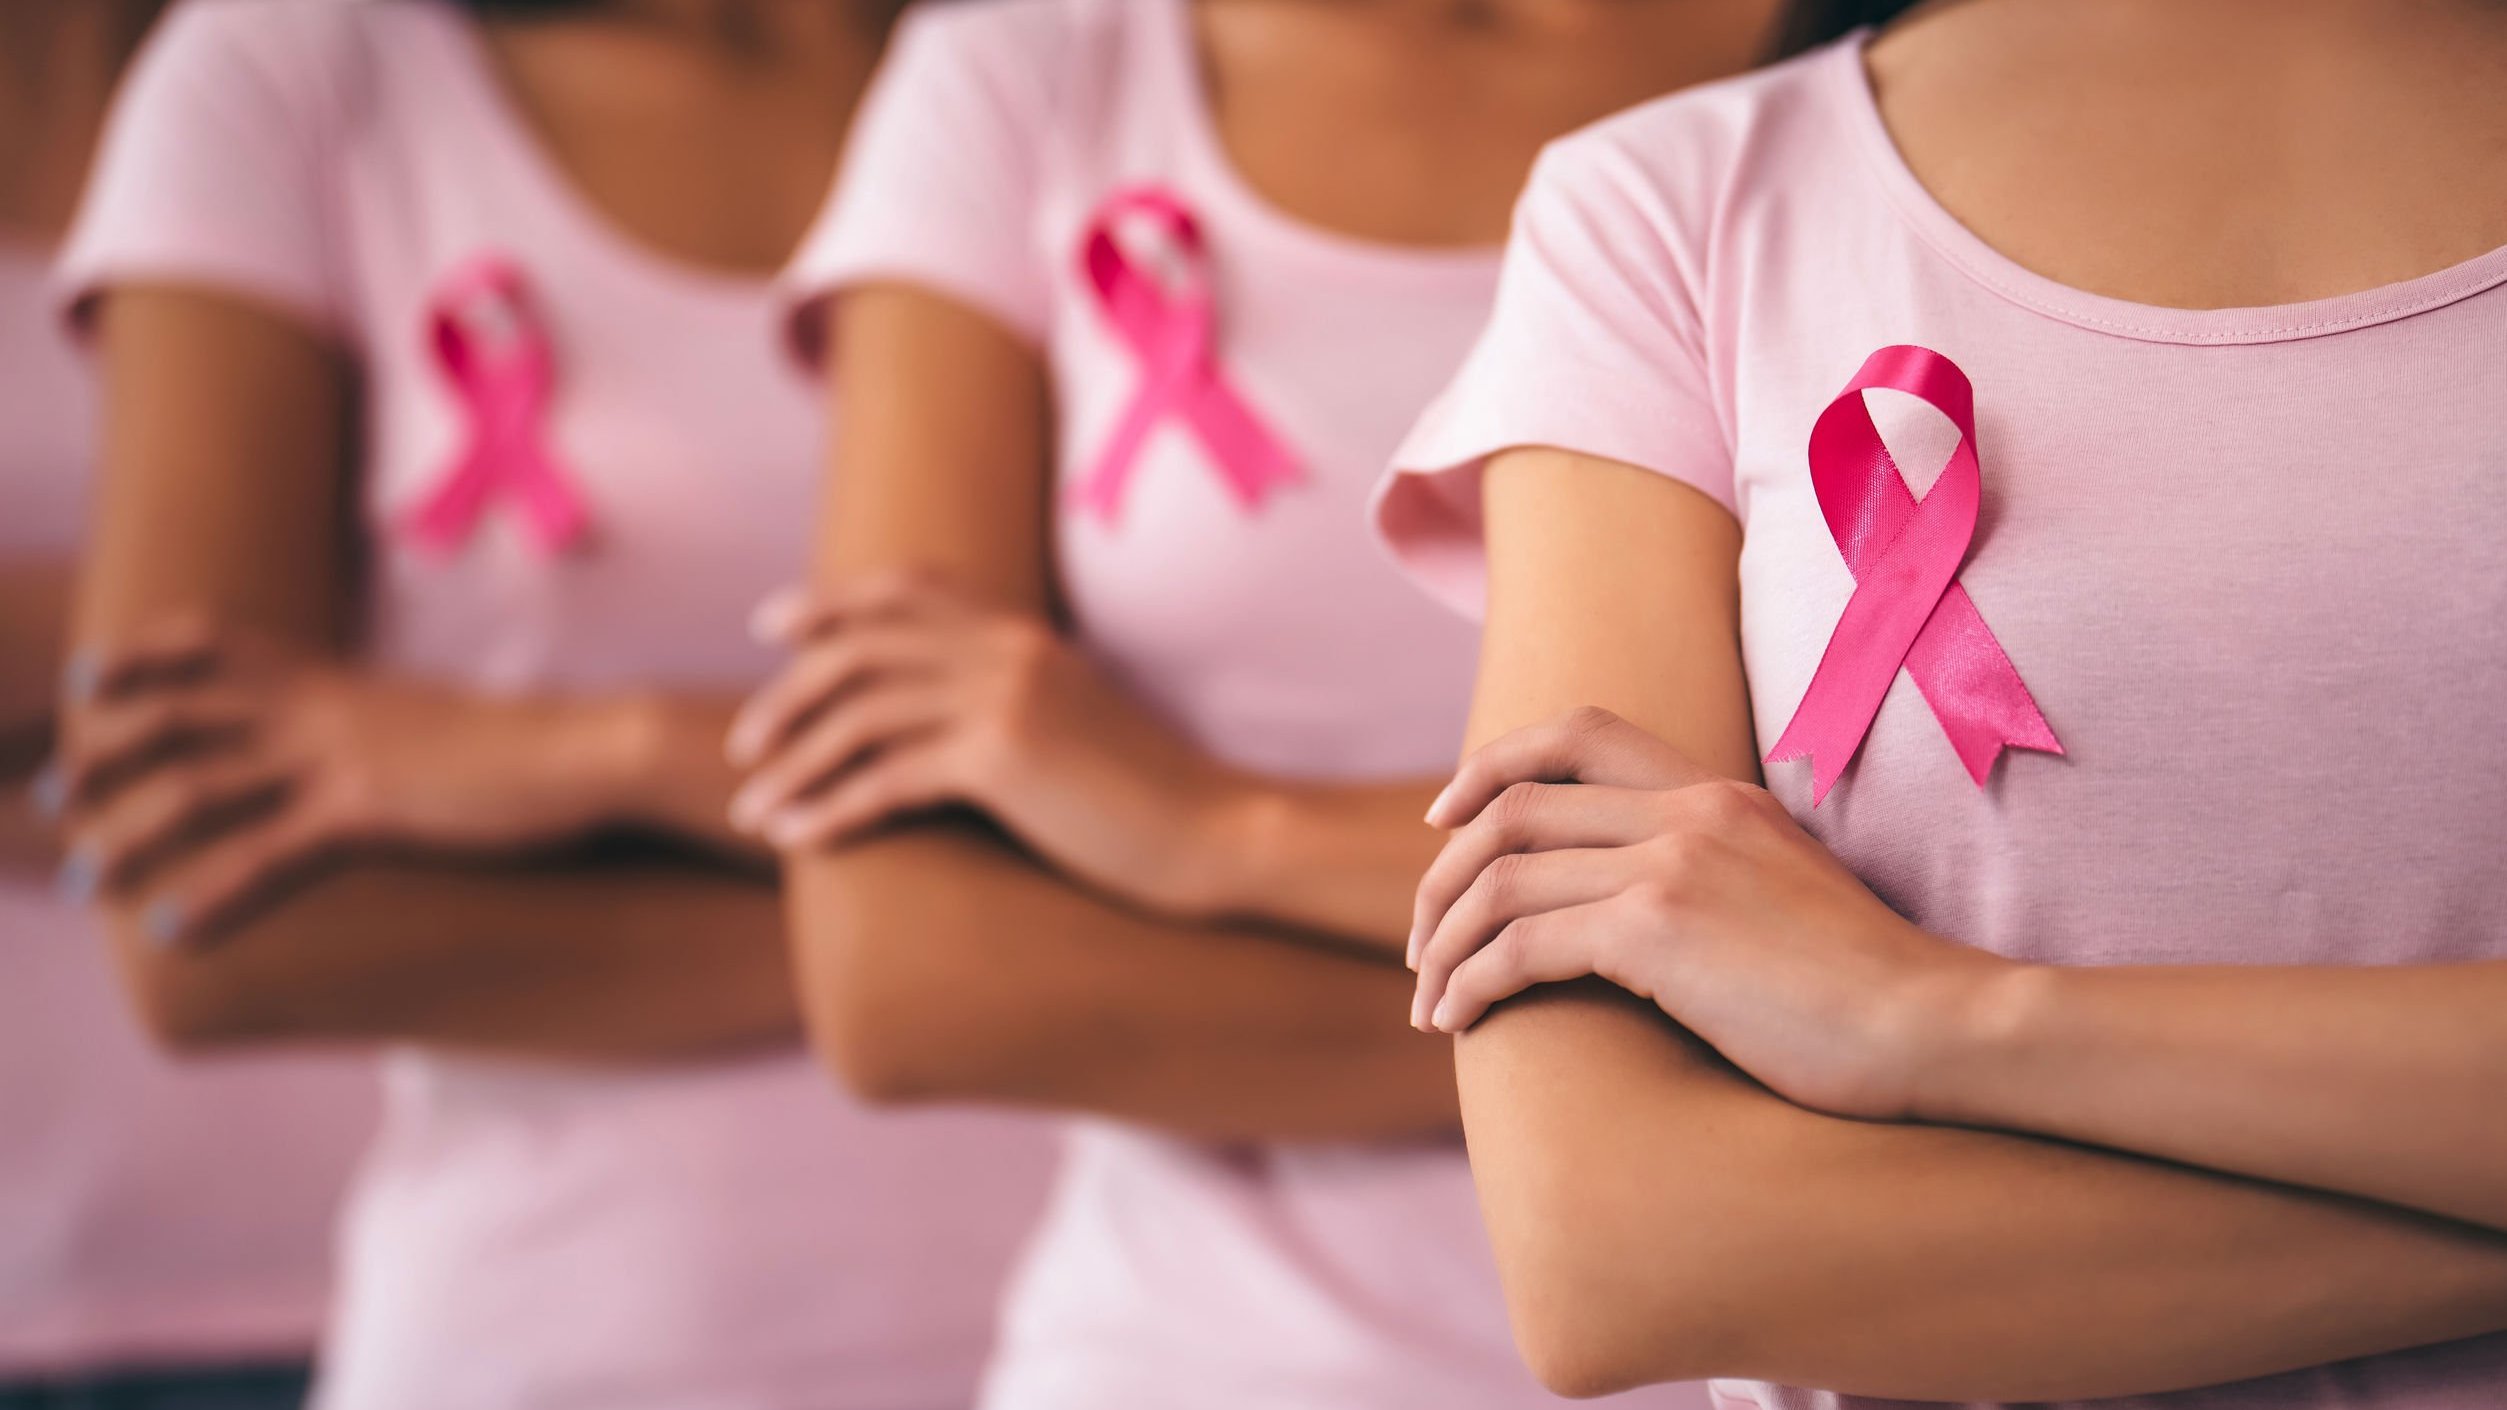 Mulheres em fila, de braços cruzados, com fitas de conscientização do câncer de mama na camiseta.